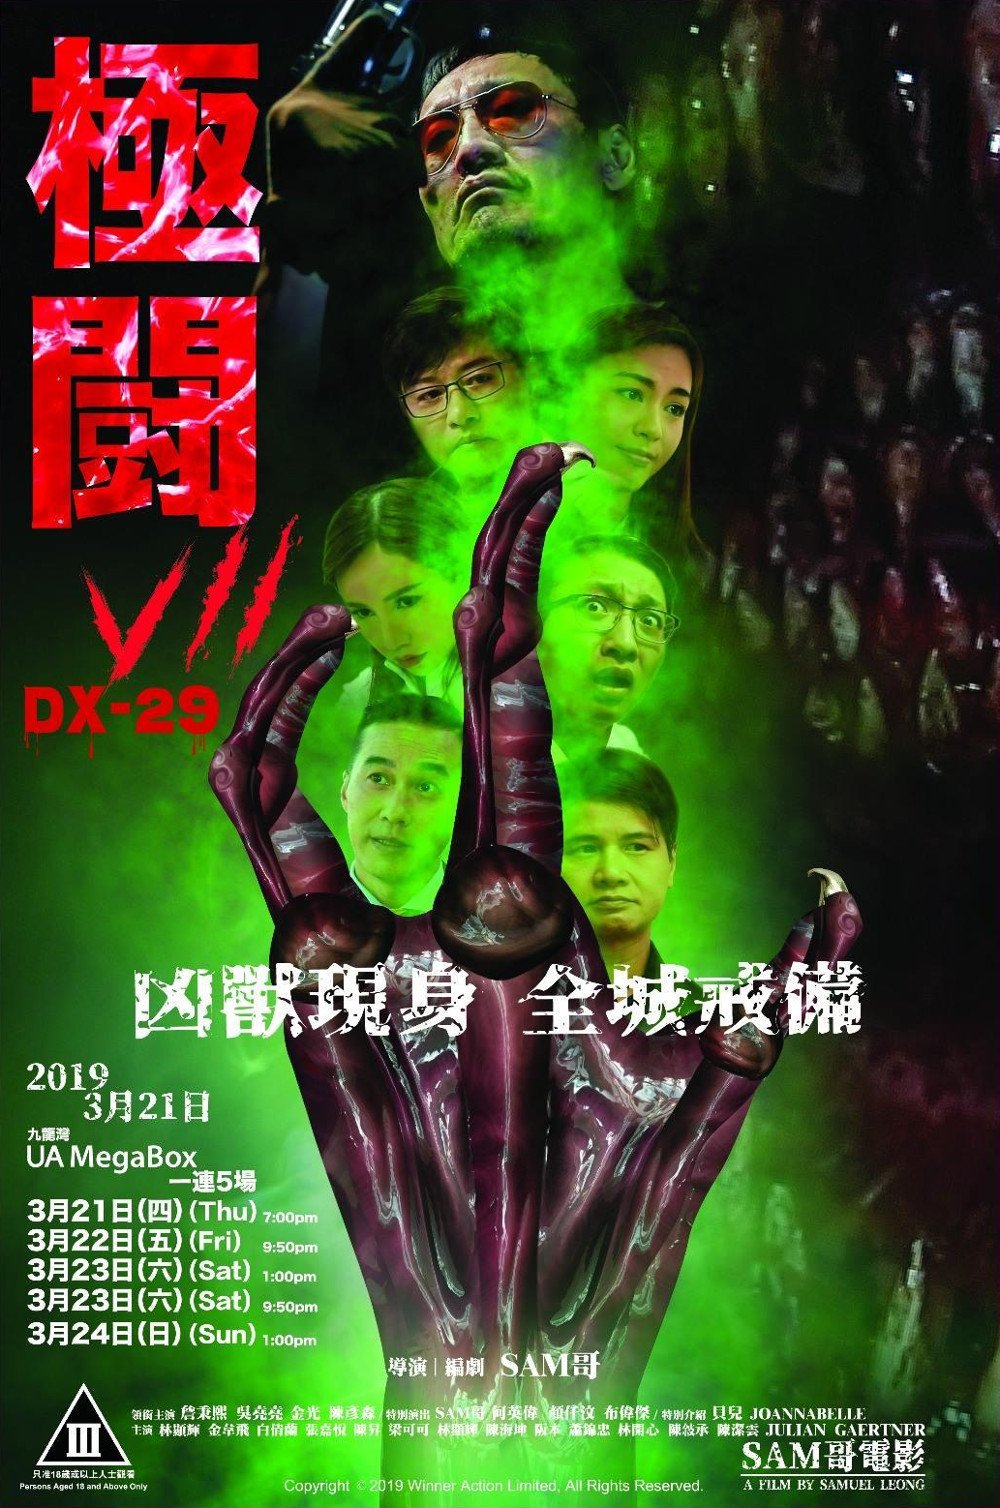 極闘7 DX-29電影圖片 - Poster_1553129346.jpg